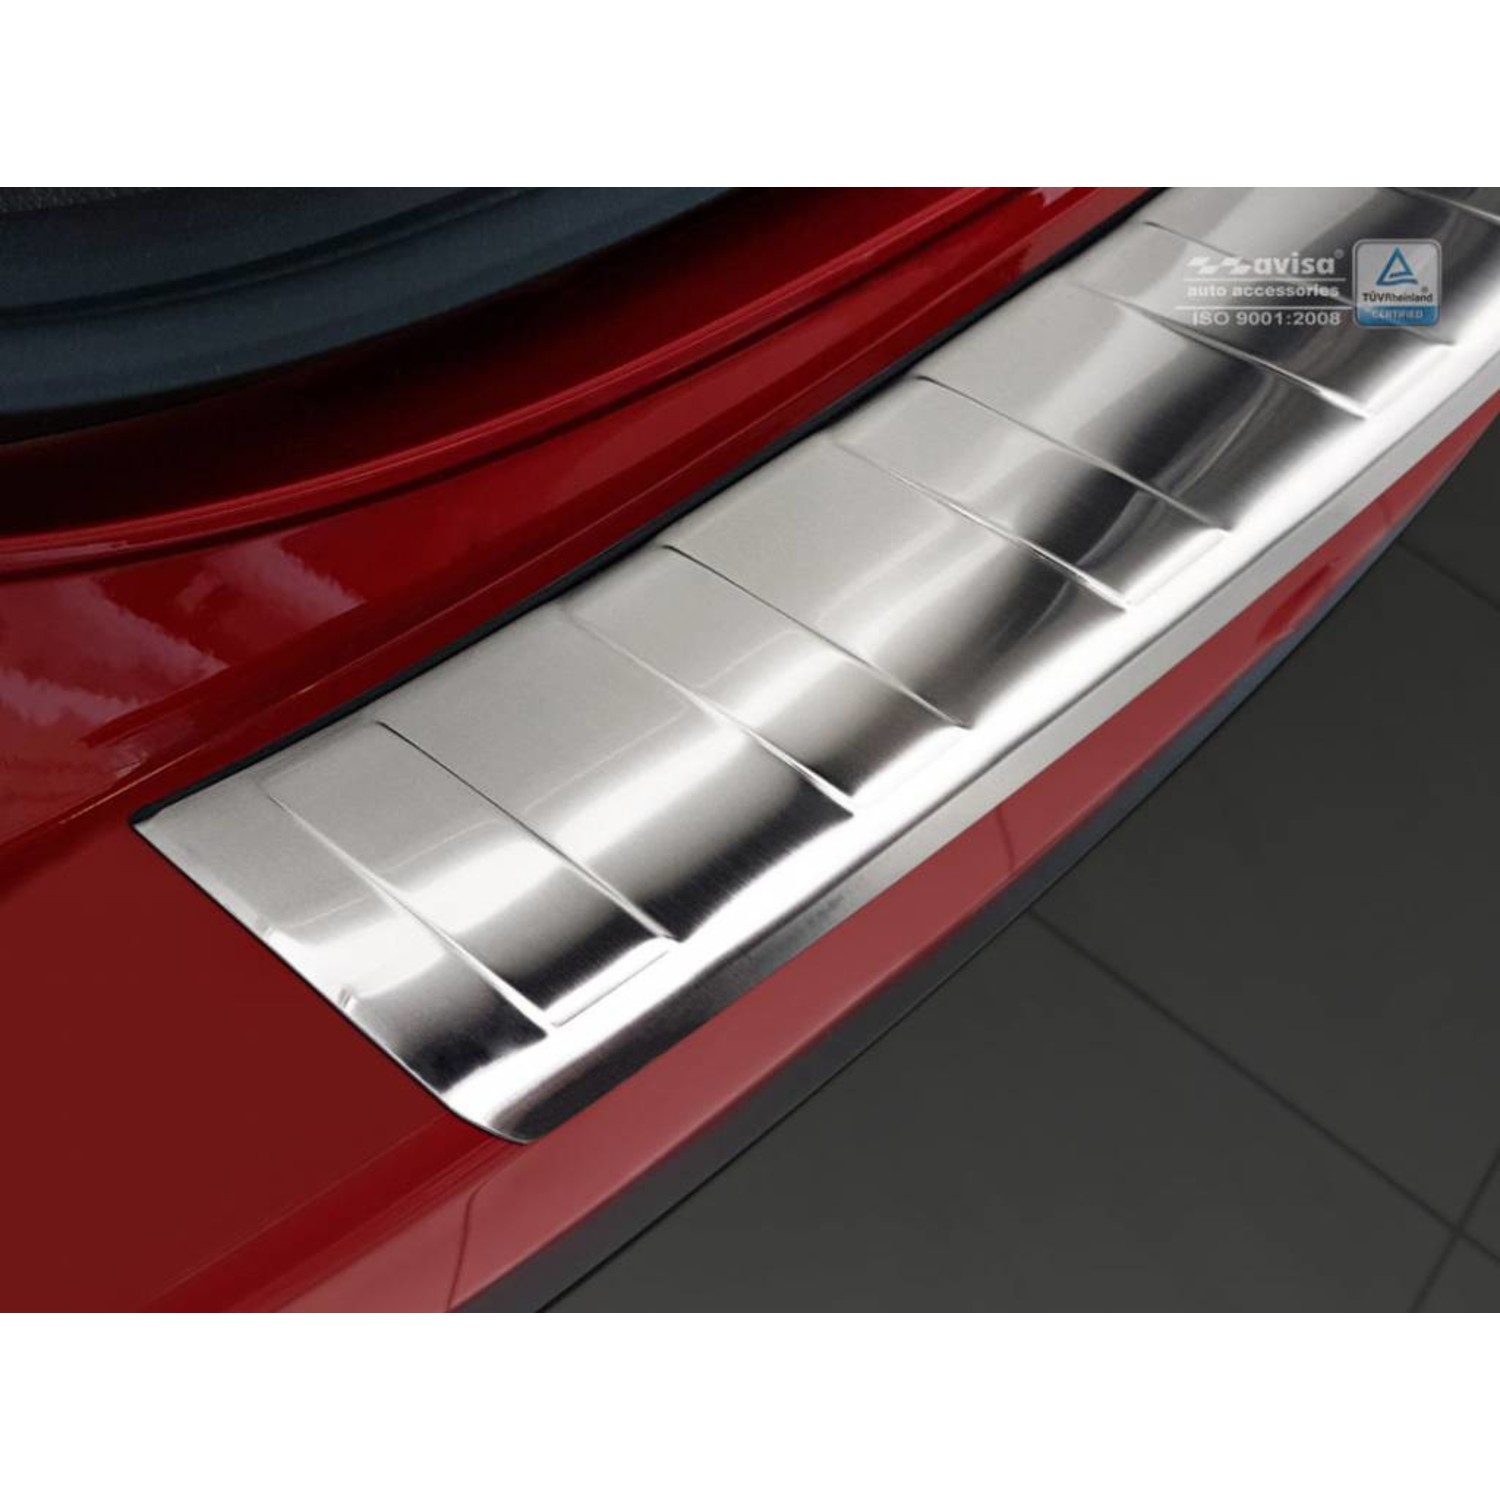 [Vom Hersteller generalüberholtes Produkt] Ladekantenschutz für Mazda - II Premium Autozubehör Maluch KF CX-5